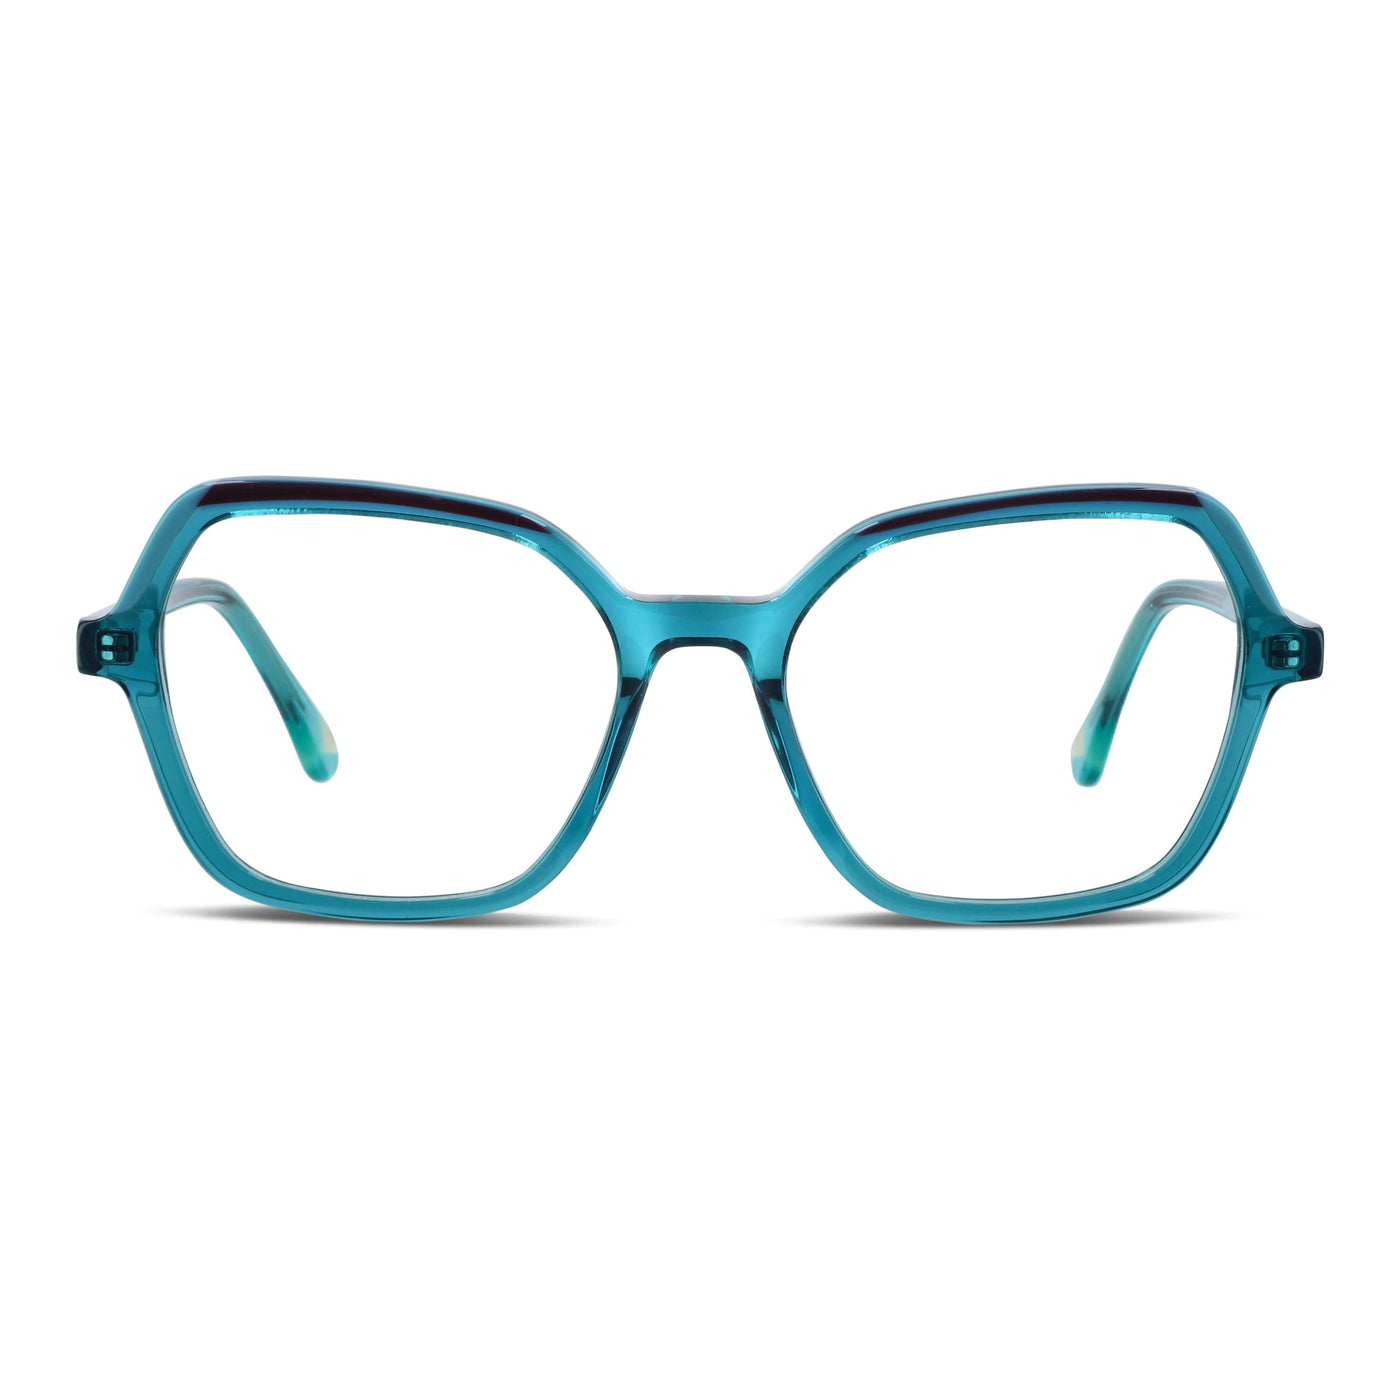 lentes opticos cuadrados verde mujer cara redonda receta multifocal bifocal adelgazado filtro azul..jpg